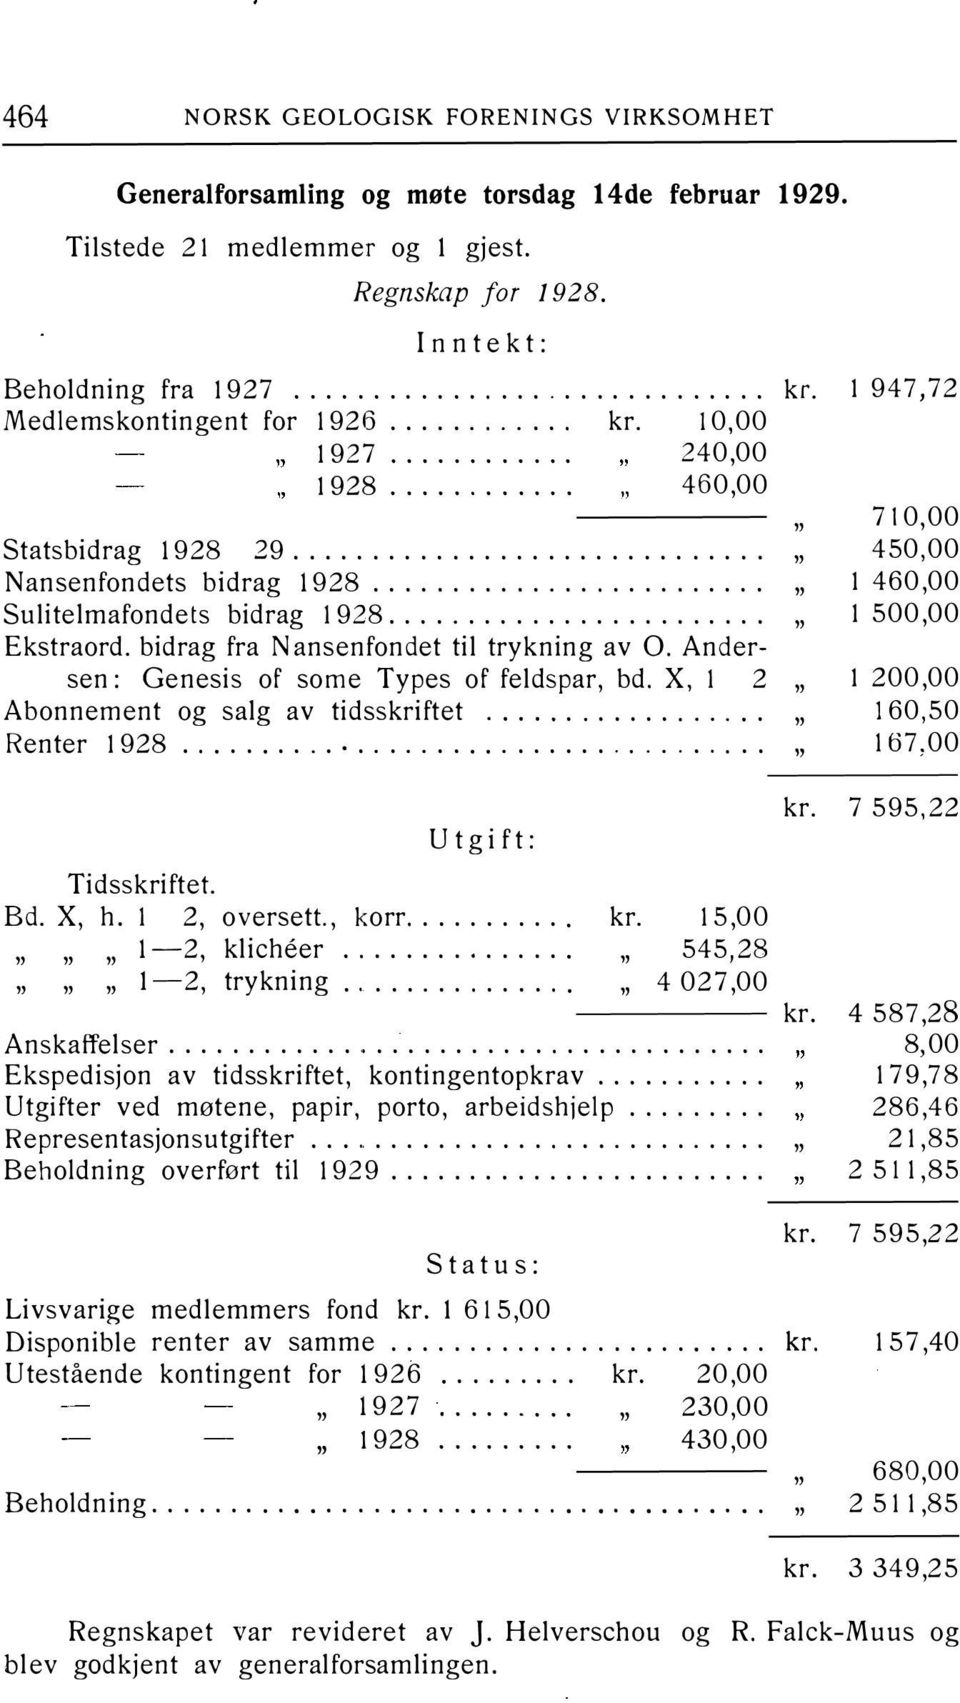 .. " Sulitelmafondets bidrag 1928.... " Ekstraord. bidrag fra Nansenfondet til trykning av O. Andersen: Genesis of some Types of feldspar, bd. X, 1 2 " Abonnement og salg av tidsskriftet.